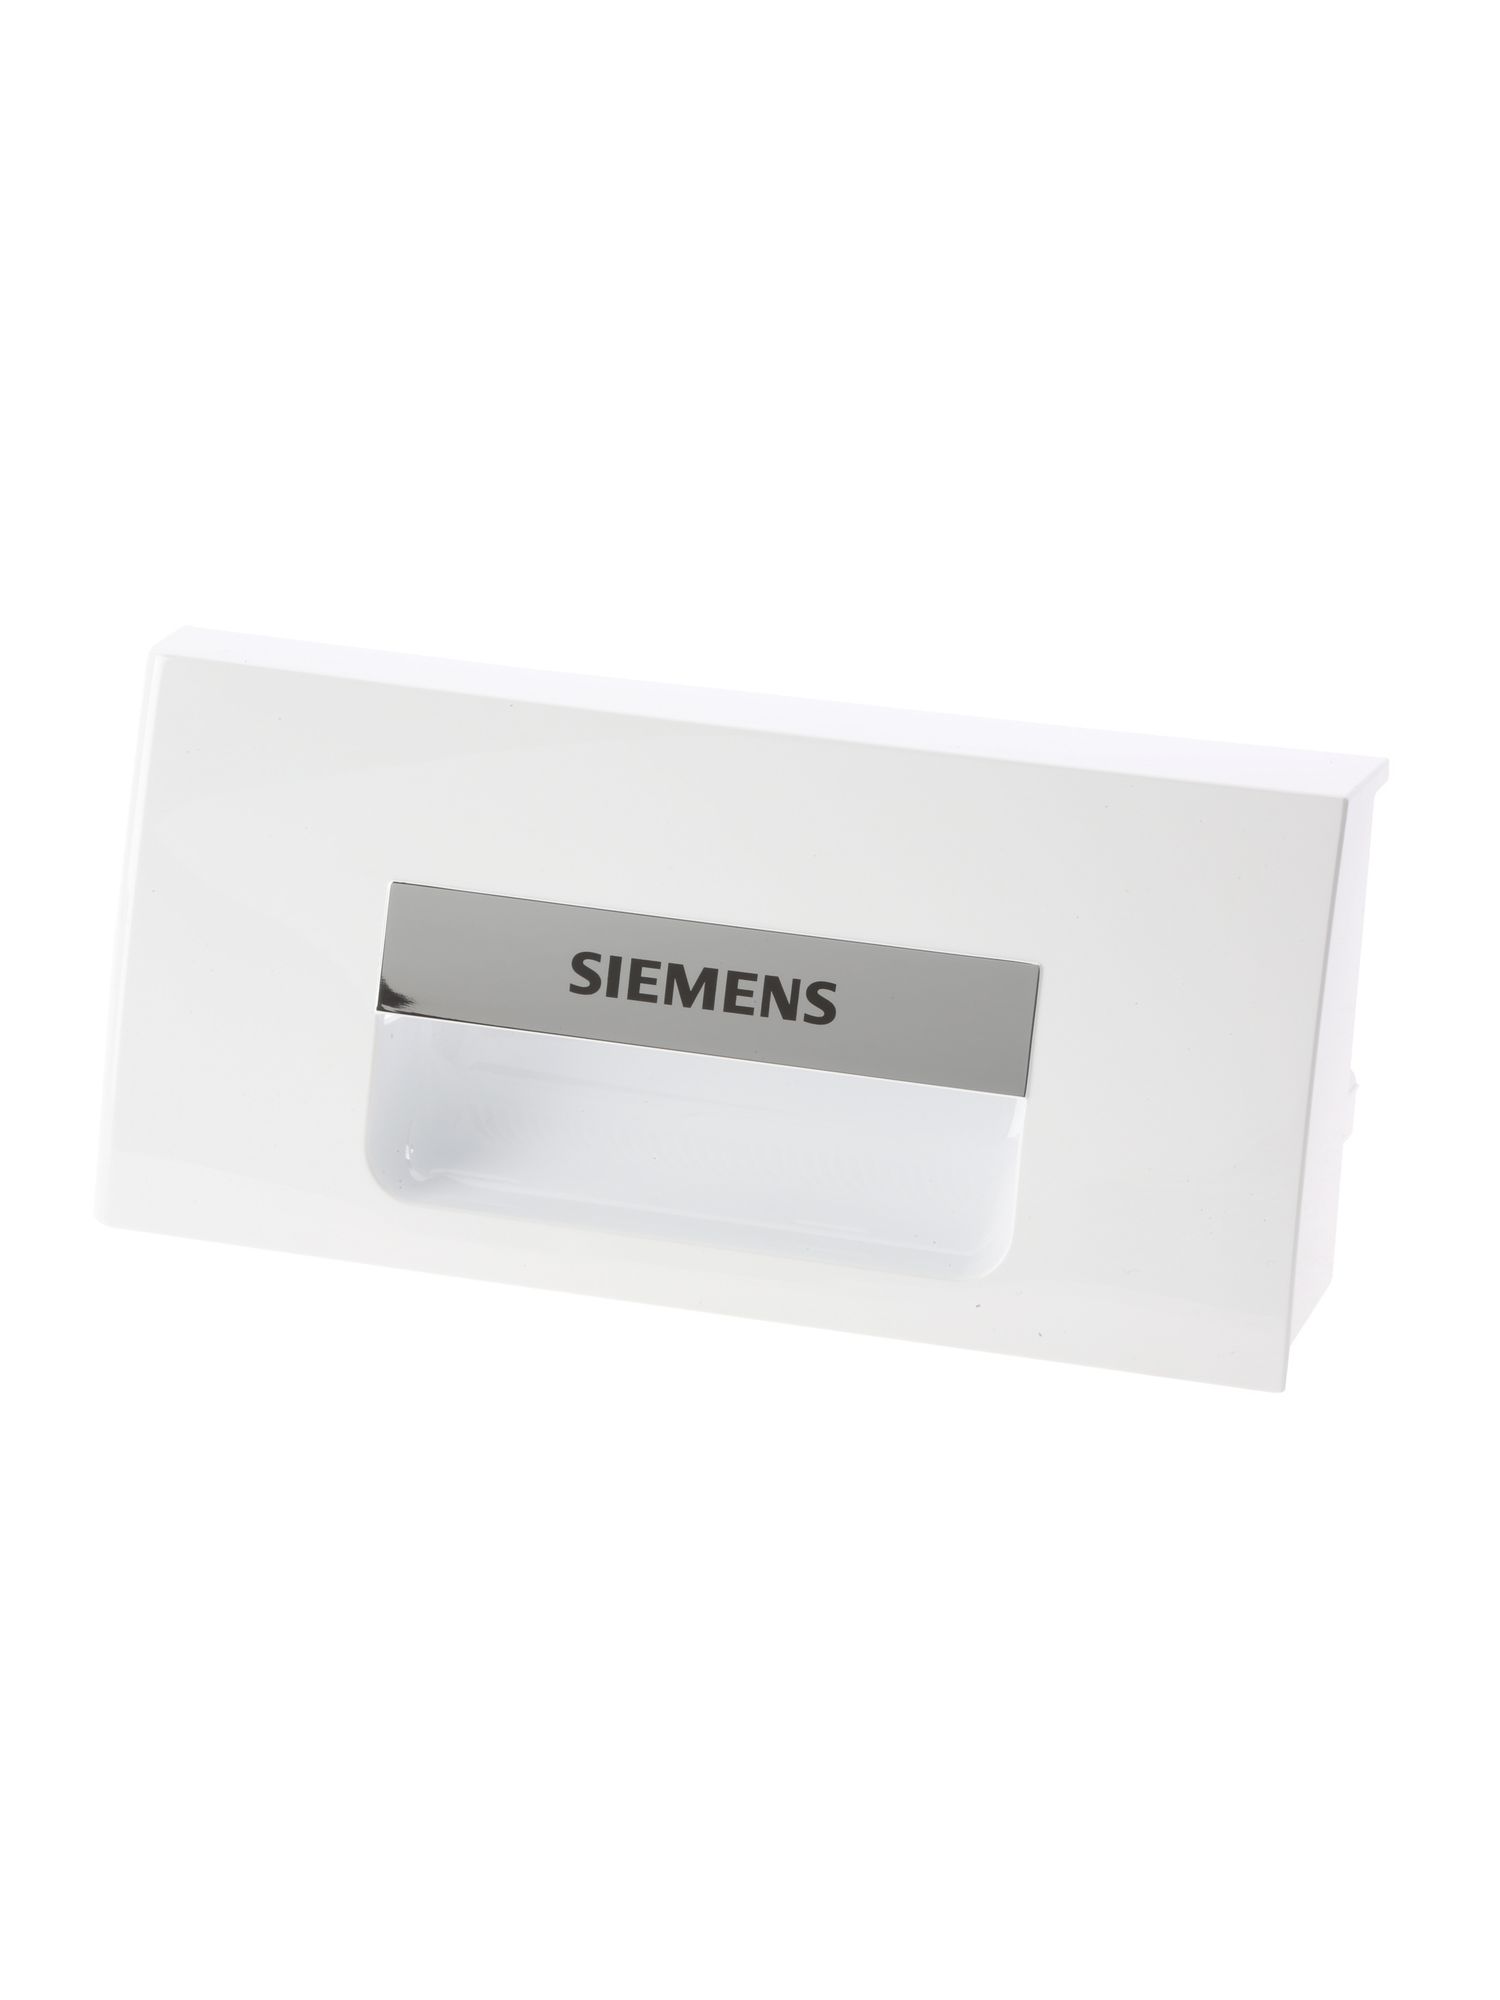 Schalengriff Siemens (KD-00646775)